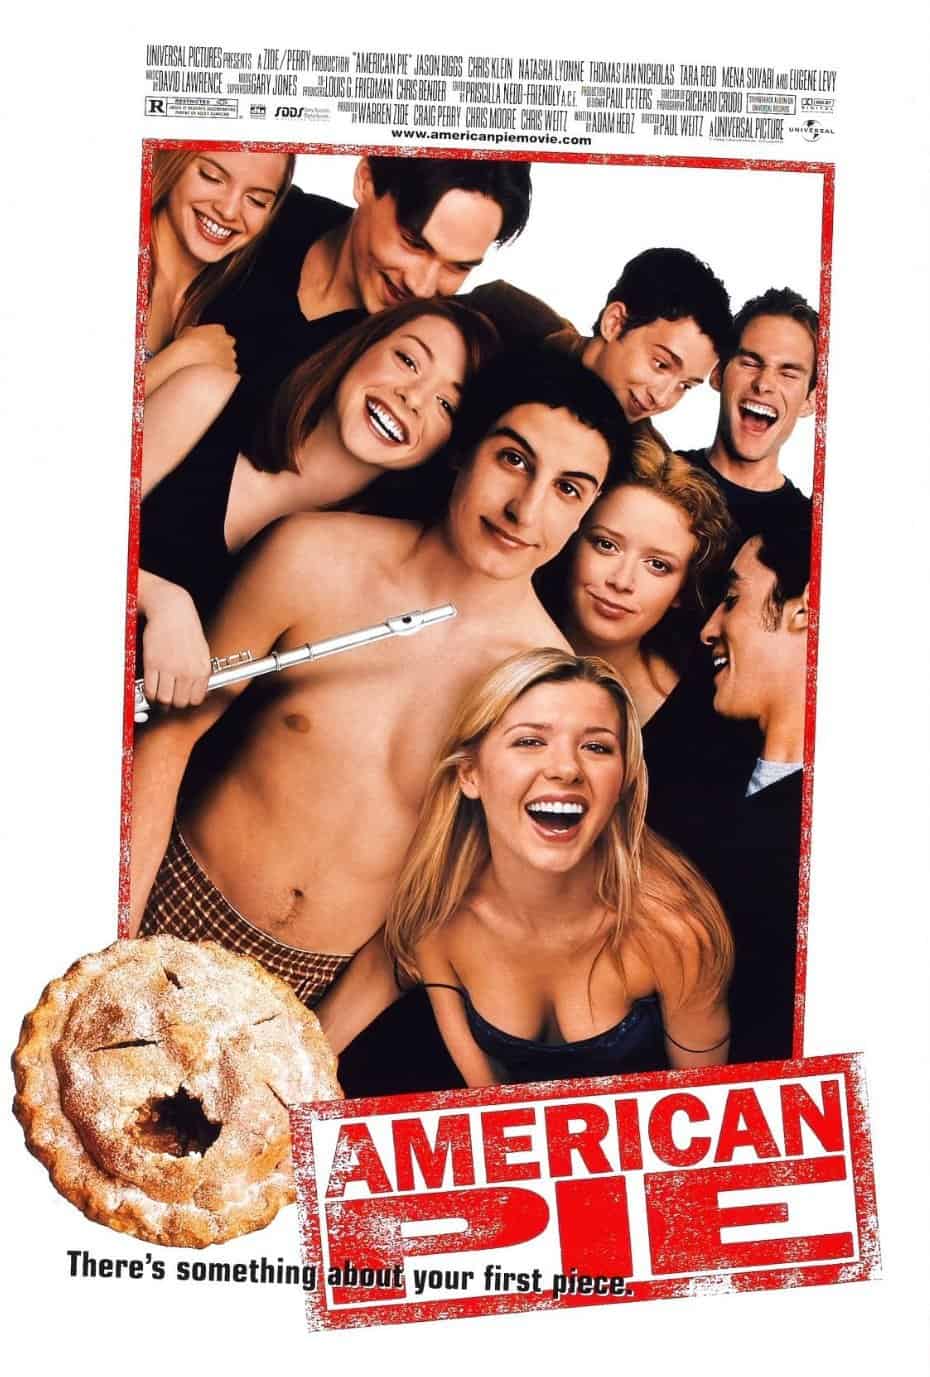 American Pie (1999) Best Movies like Superbad